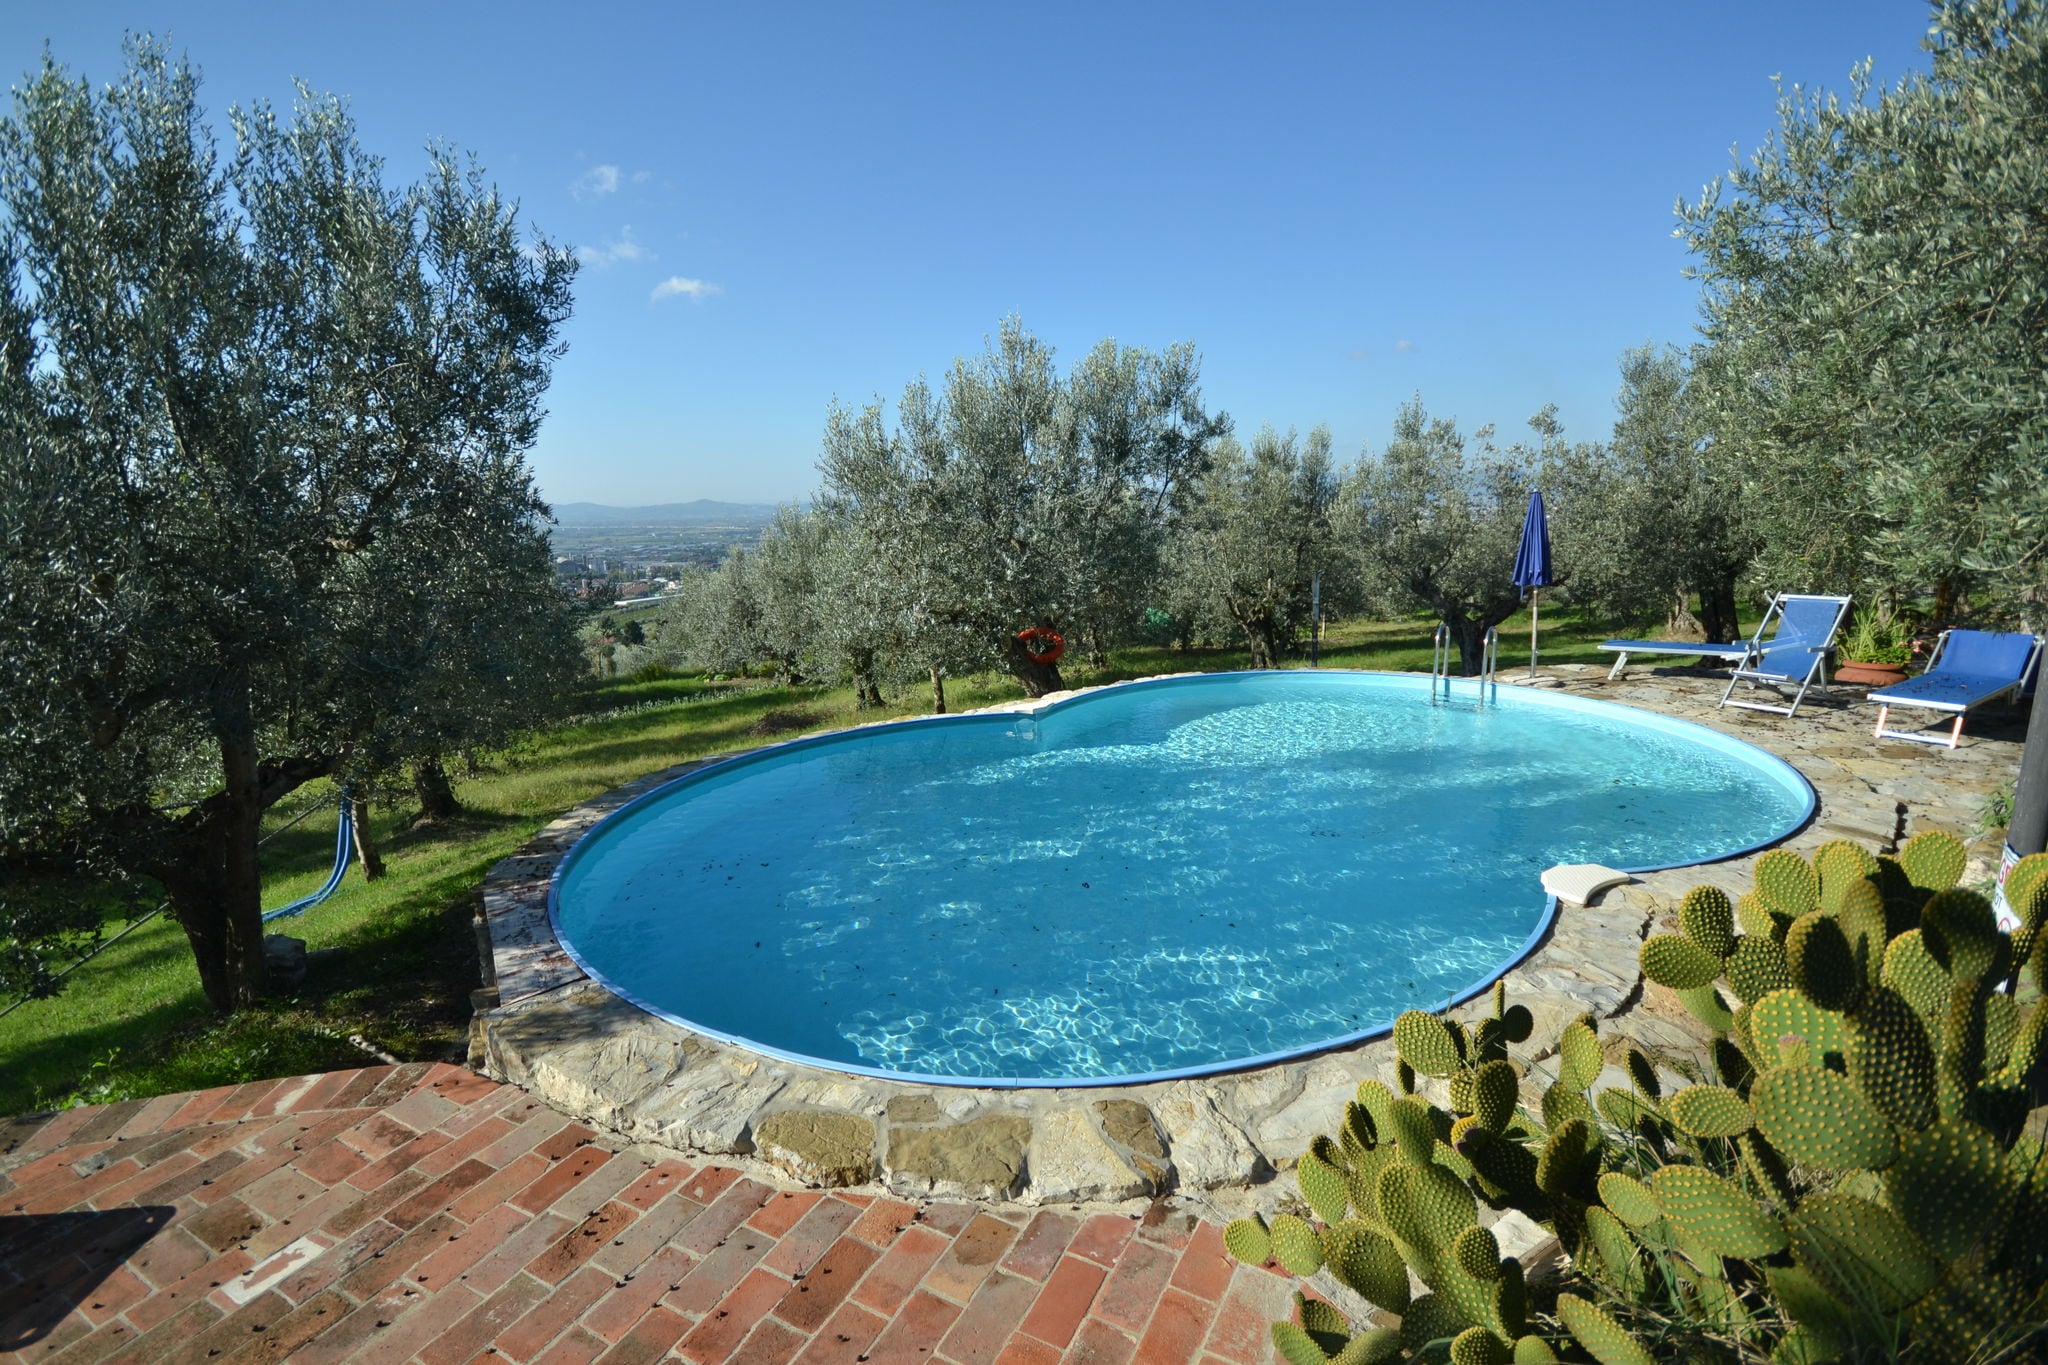 Agriturismo in natuurpark nabij Florence met prachtig zwembad tussen olijfbomen